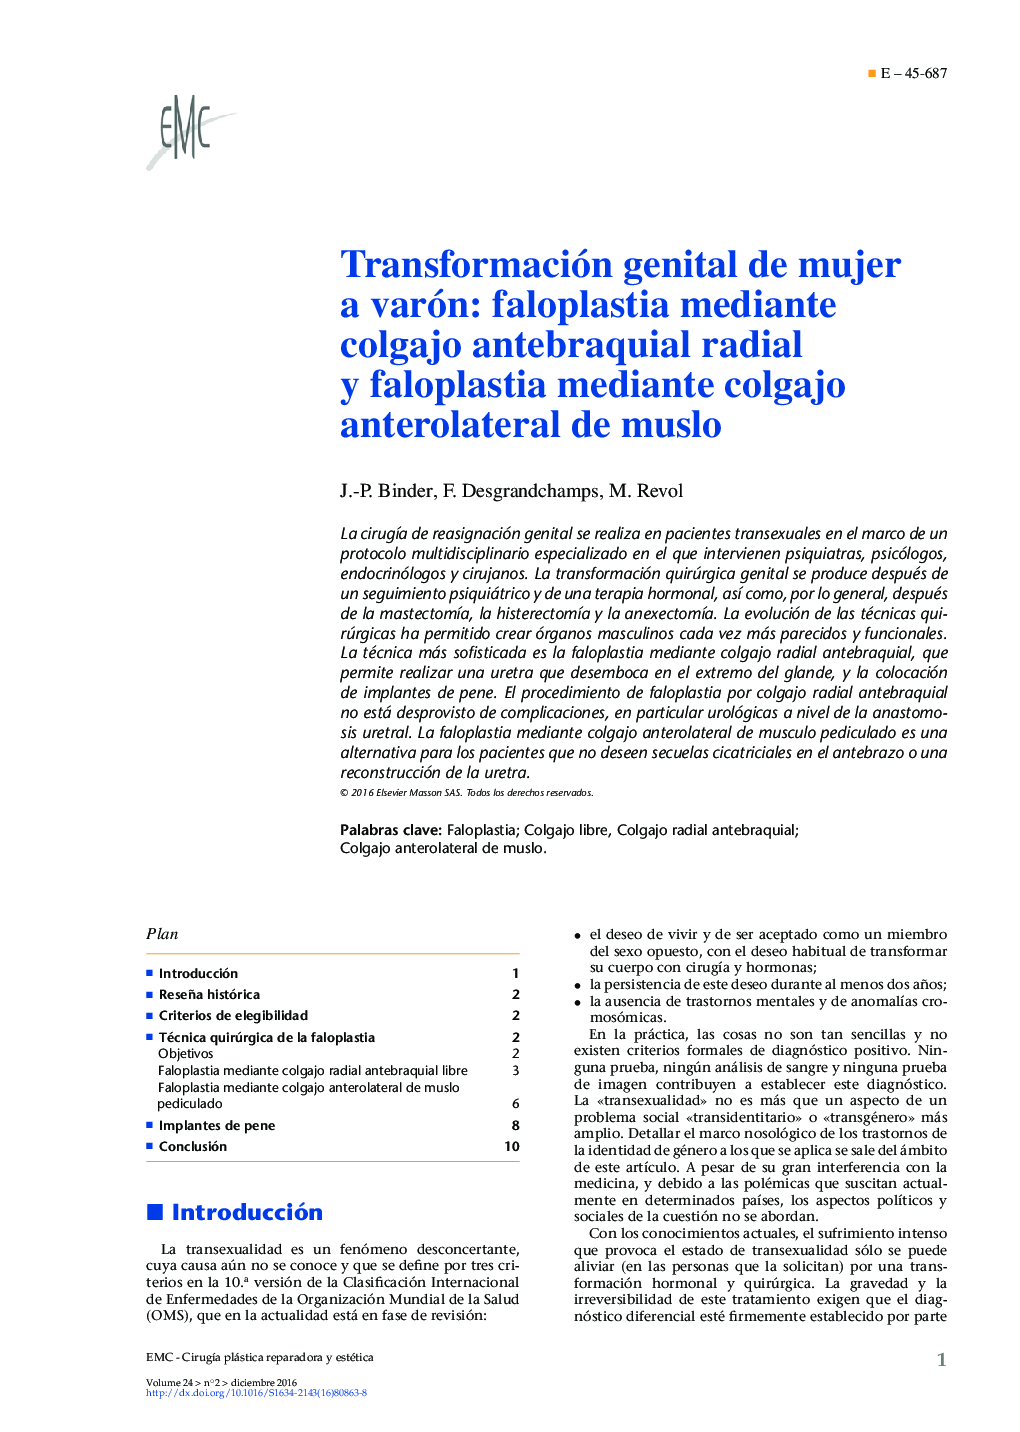 Transformación genital de mujer a varón: faloplastia mediante colgajo antebraquial radial y faloplastia mediante colgajo anterolateral de muslo